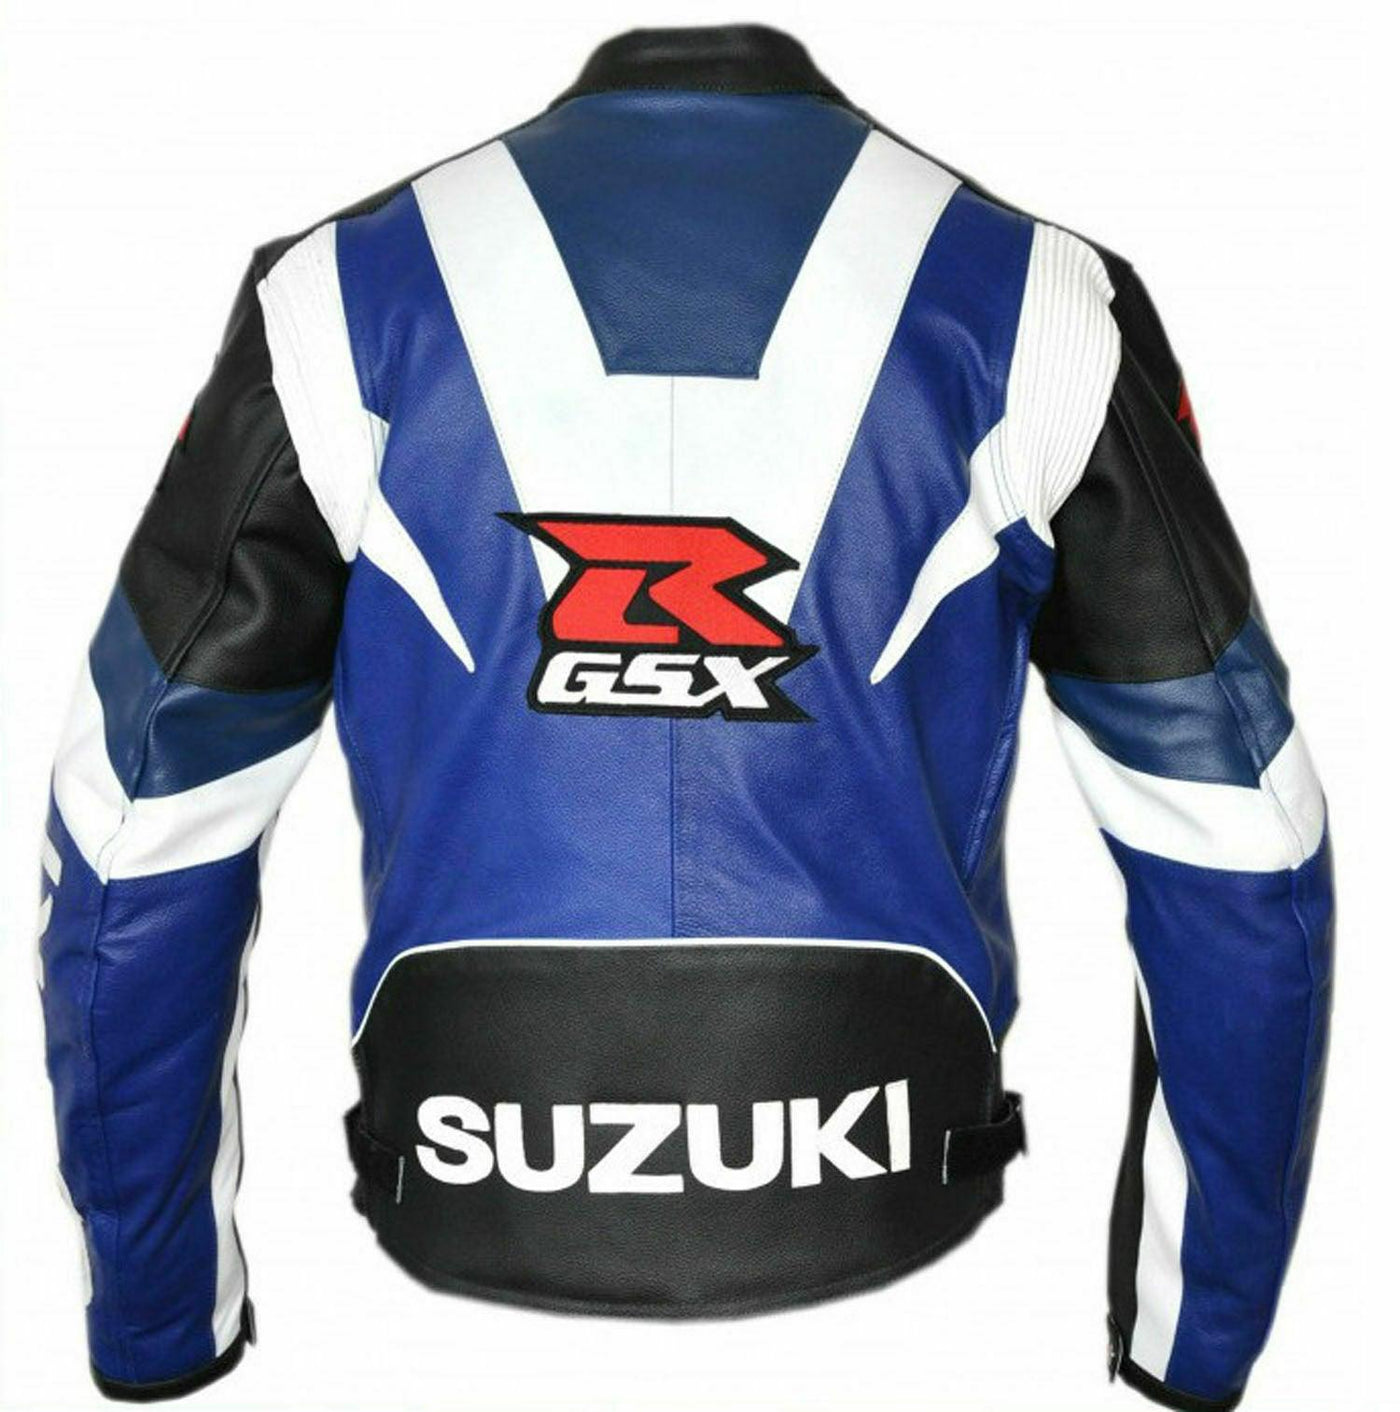 ZMJ-066 Racing Motorbike/Motorcycle Leather Jacket Custom Made Jacket For Bikers - ZEES MOTOR SPORTS